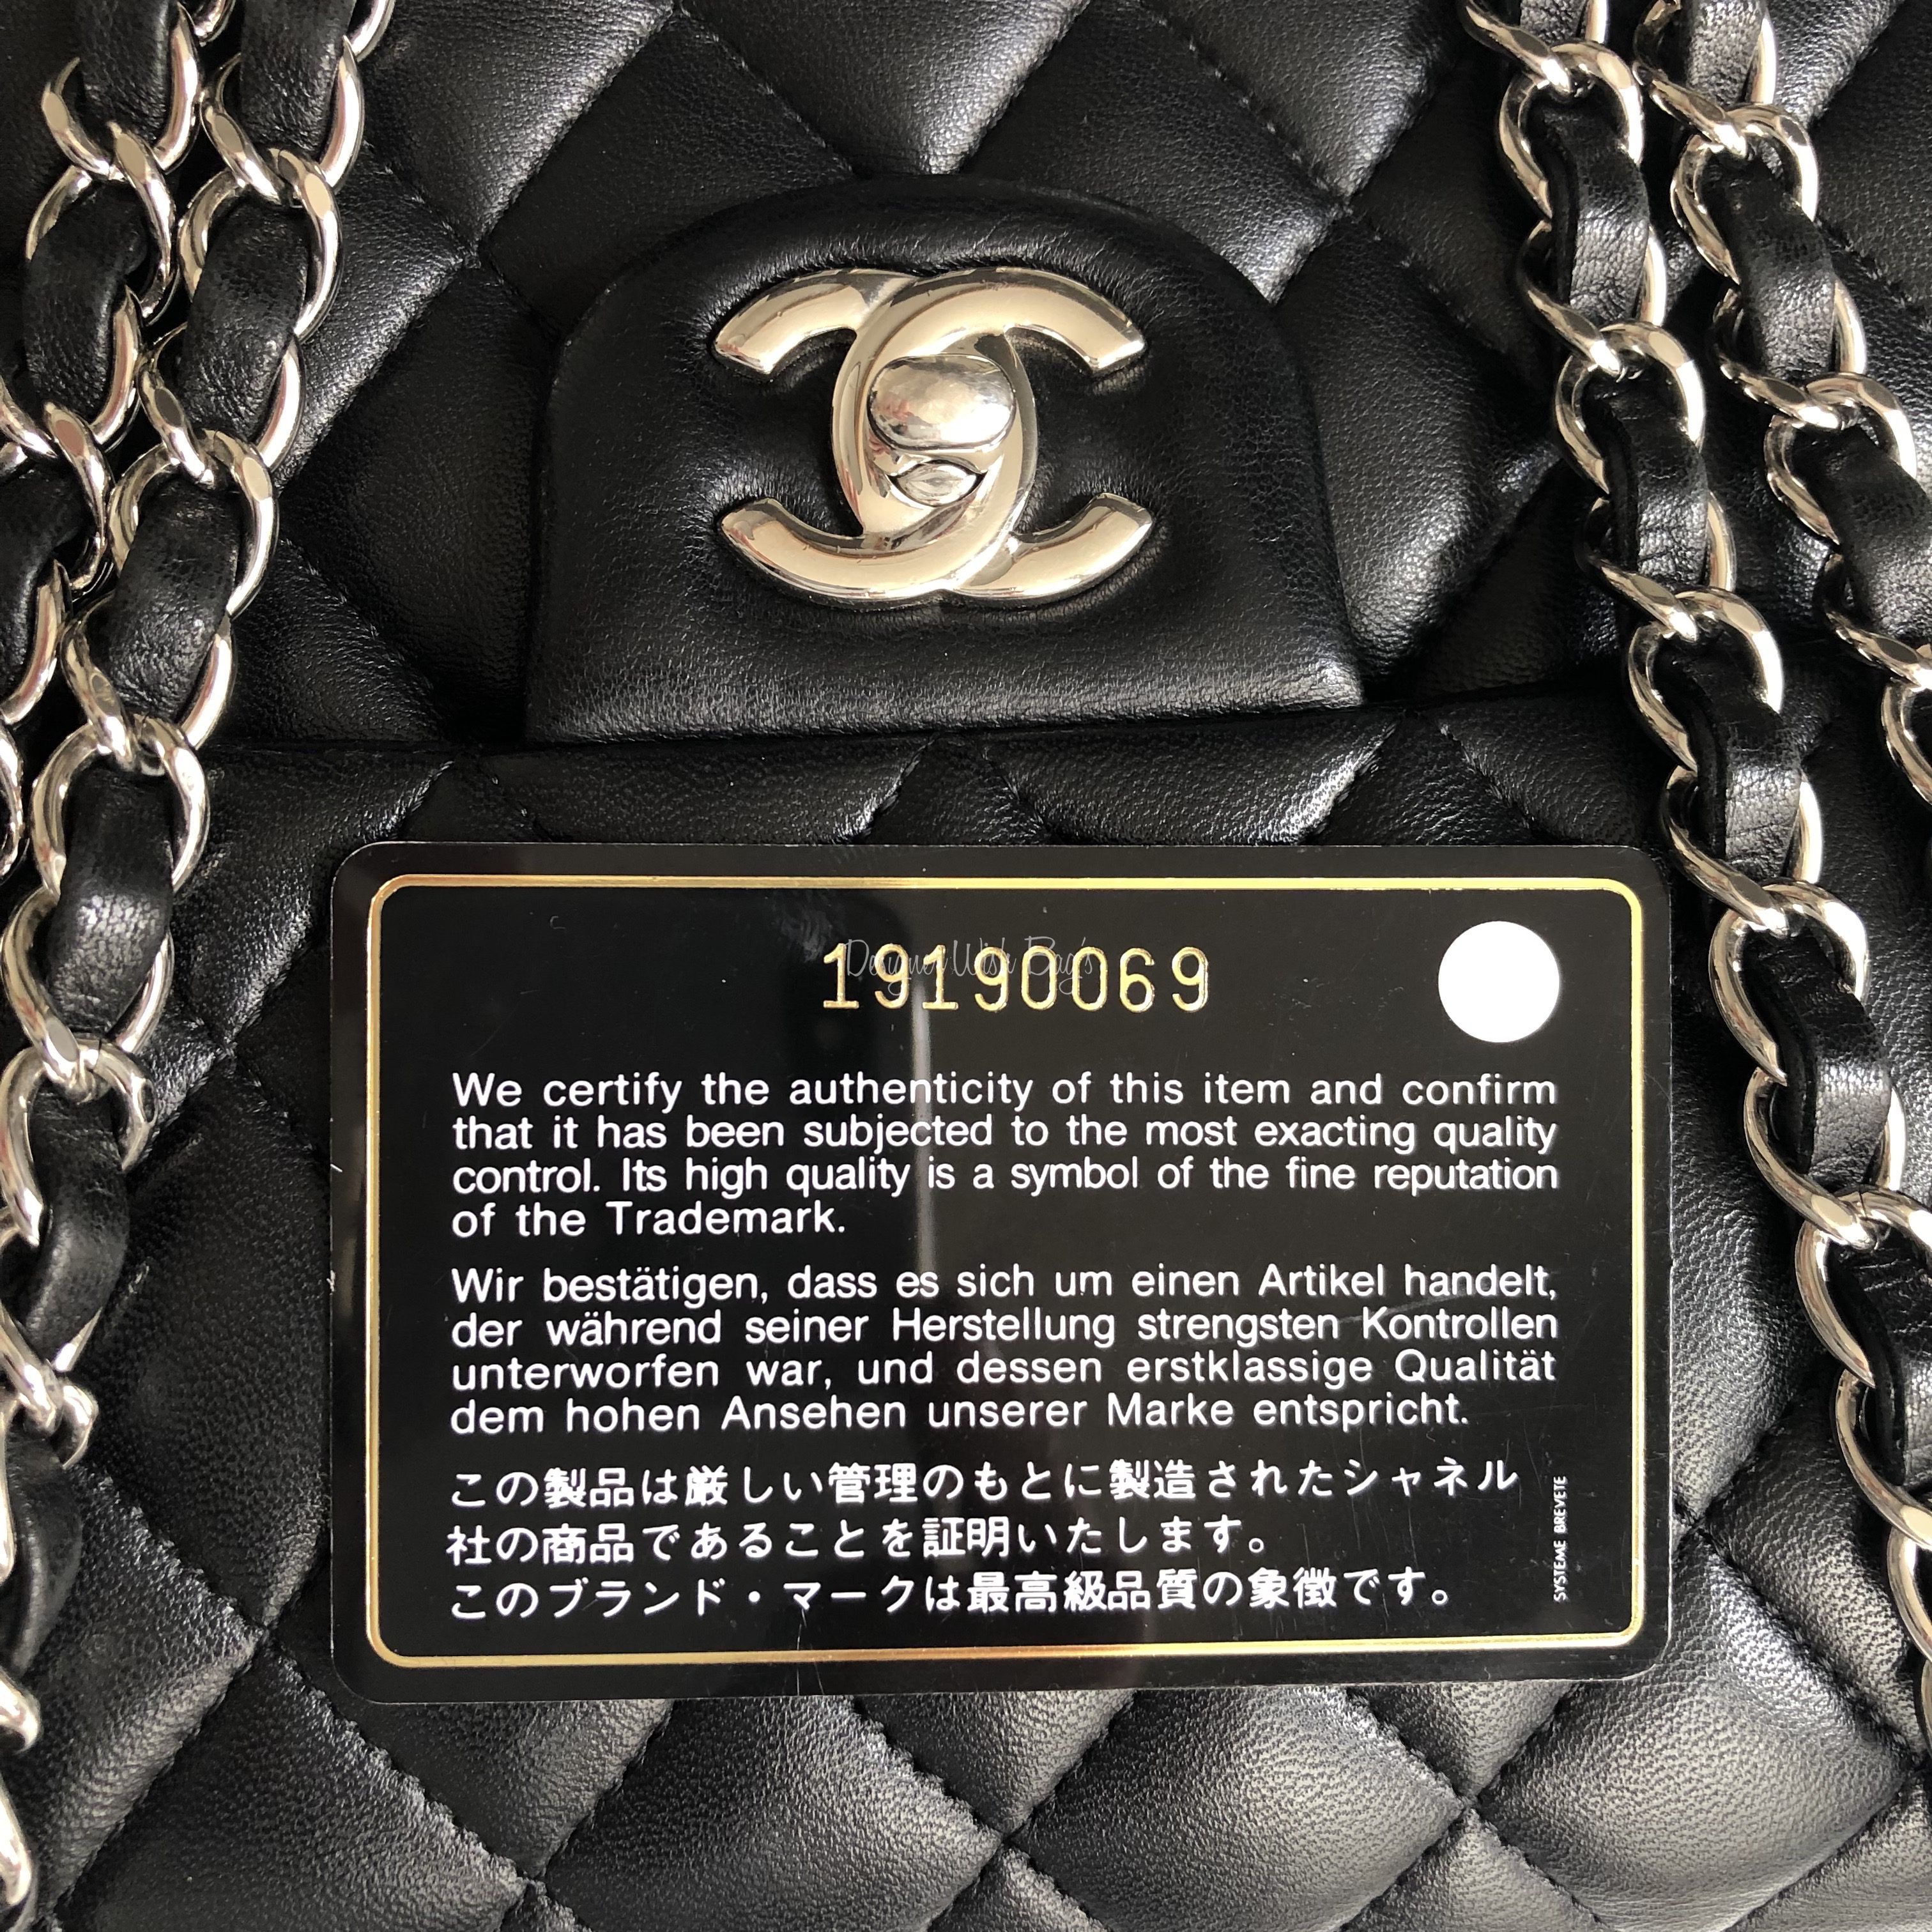 chanel vintage flap bag black leather